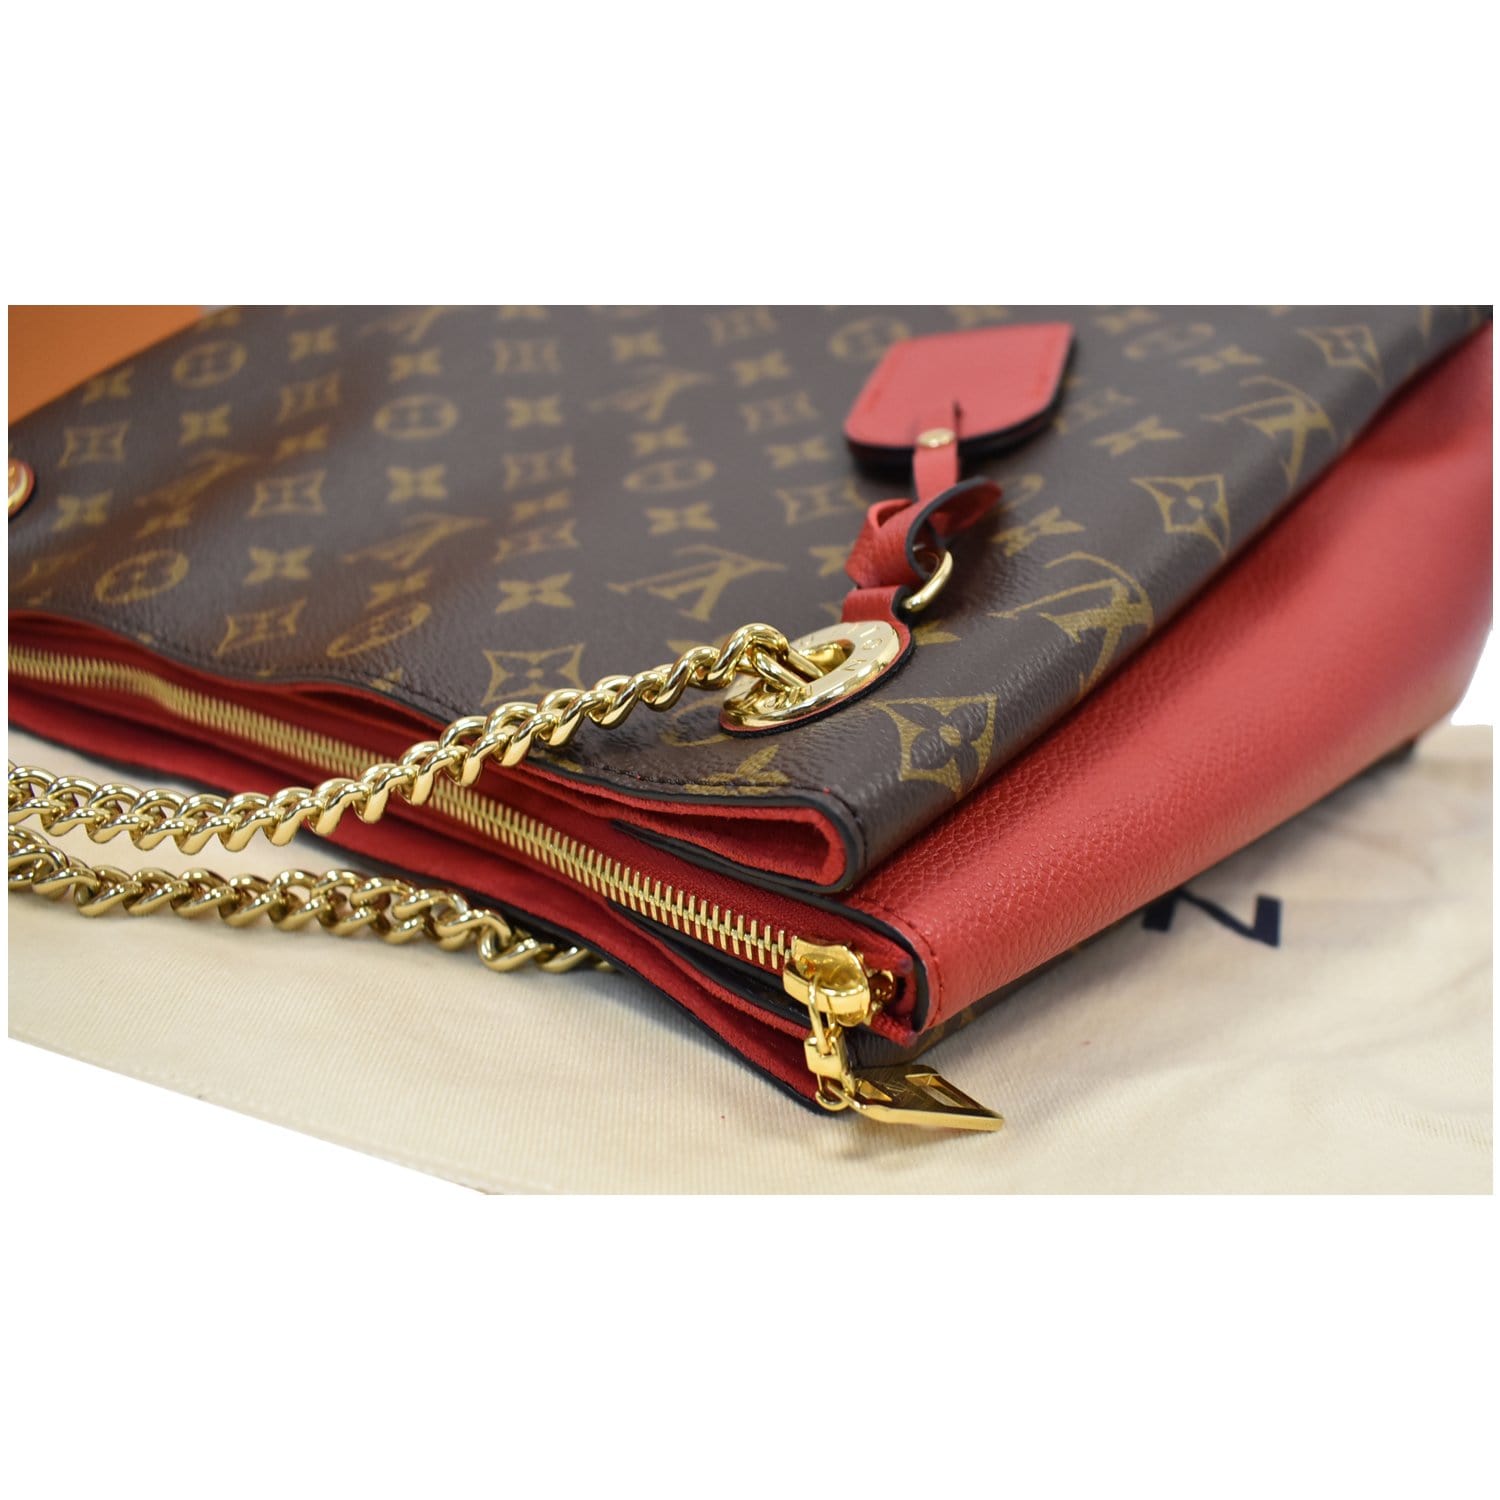 Louis Vuitton Cerise Monogram Canvas Leather Surene MM Bag